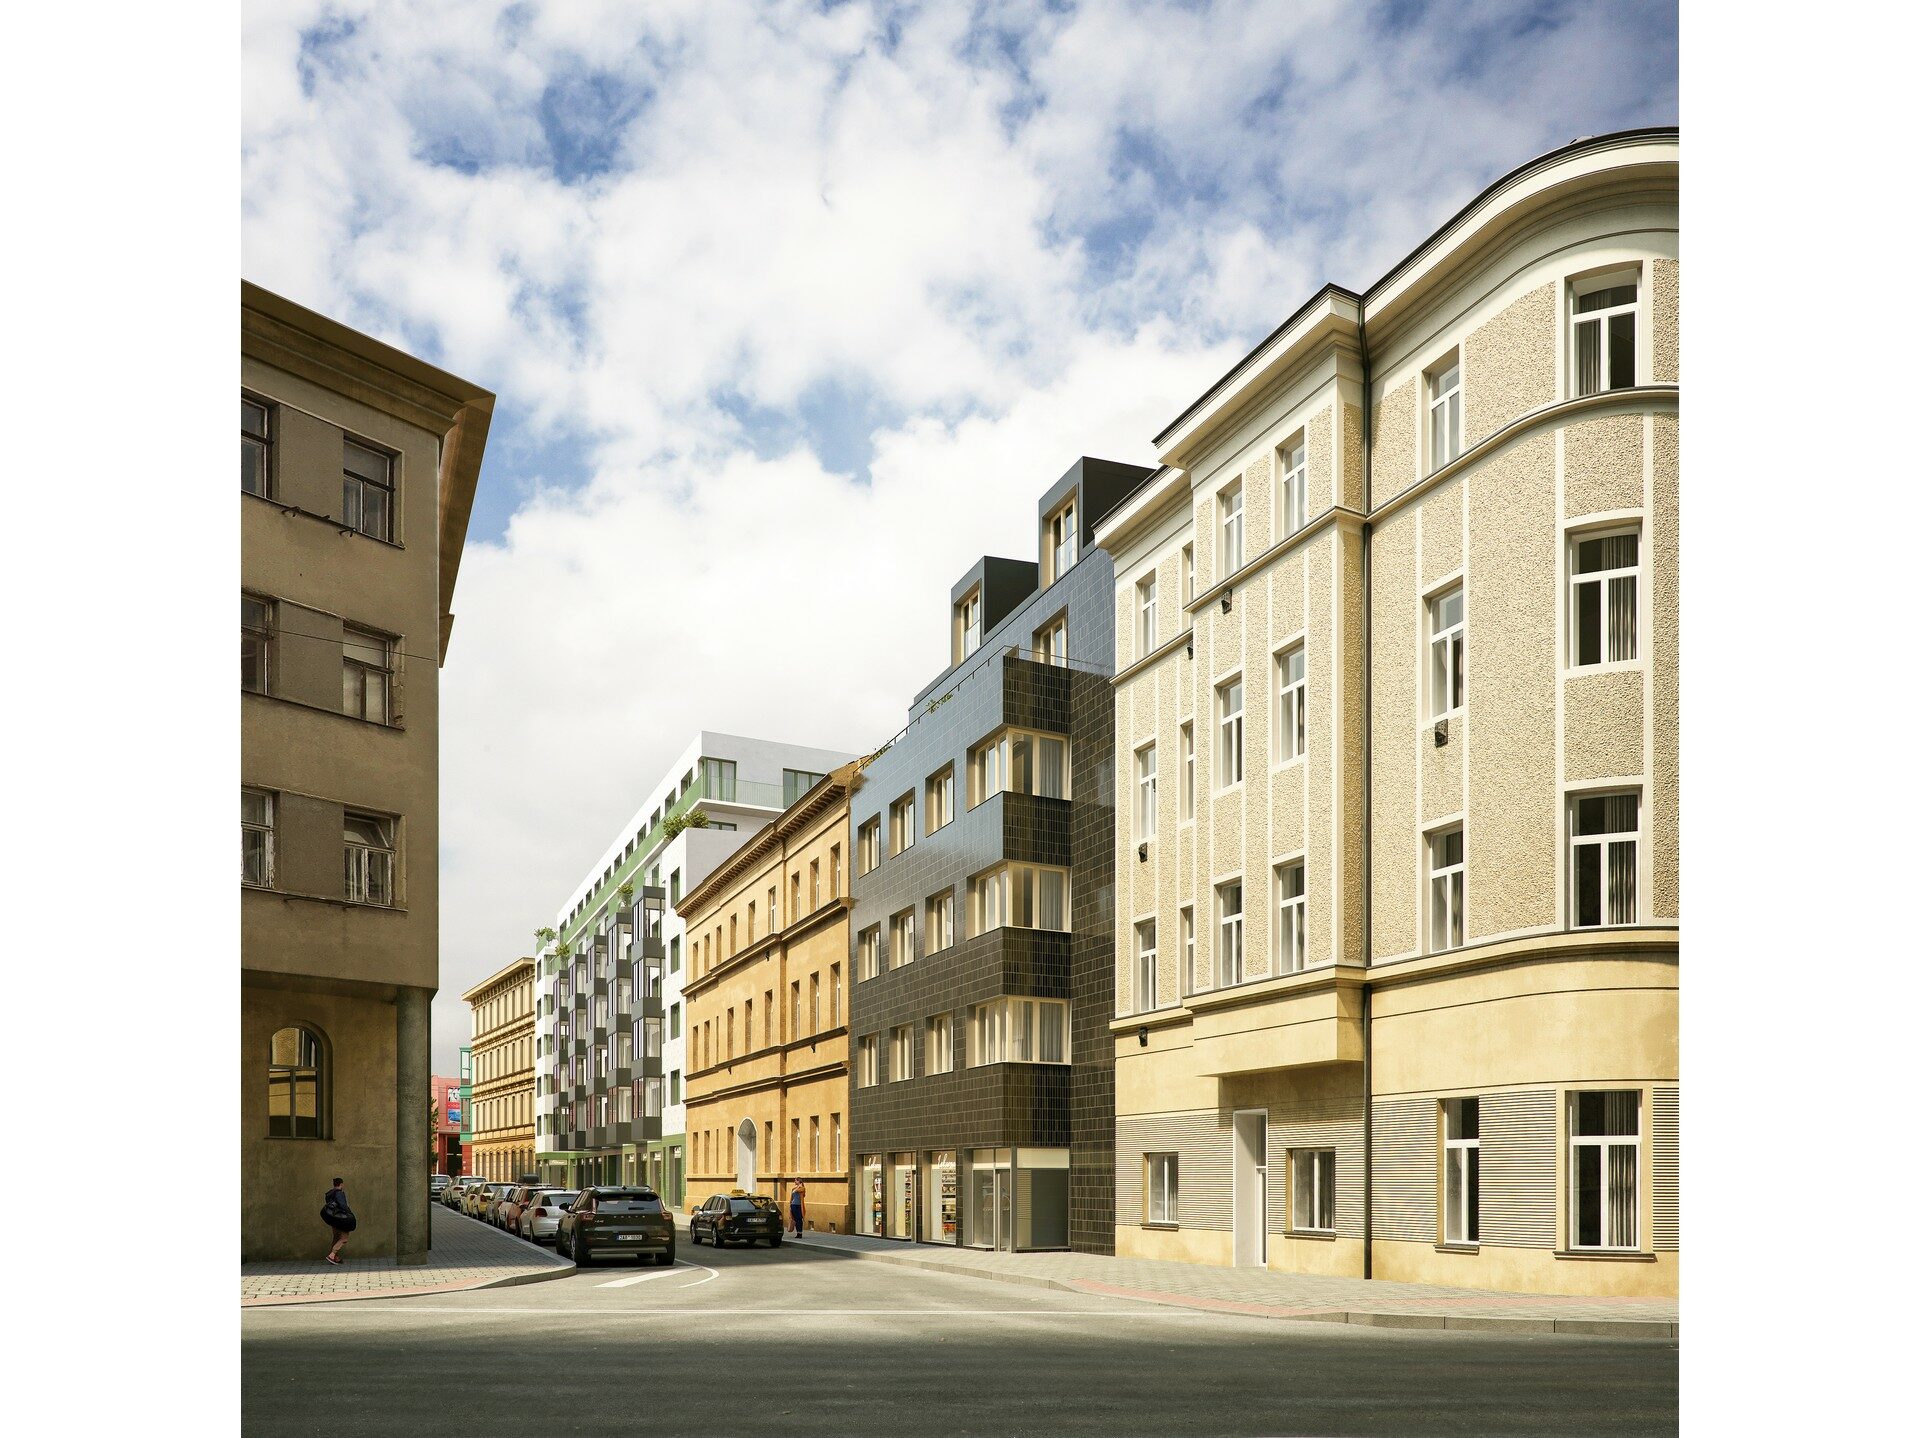 Družstevní bytové domy Rumiště, Brno